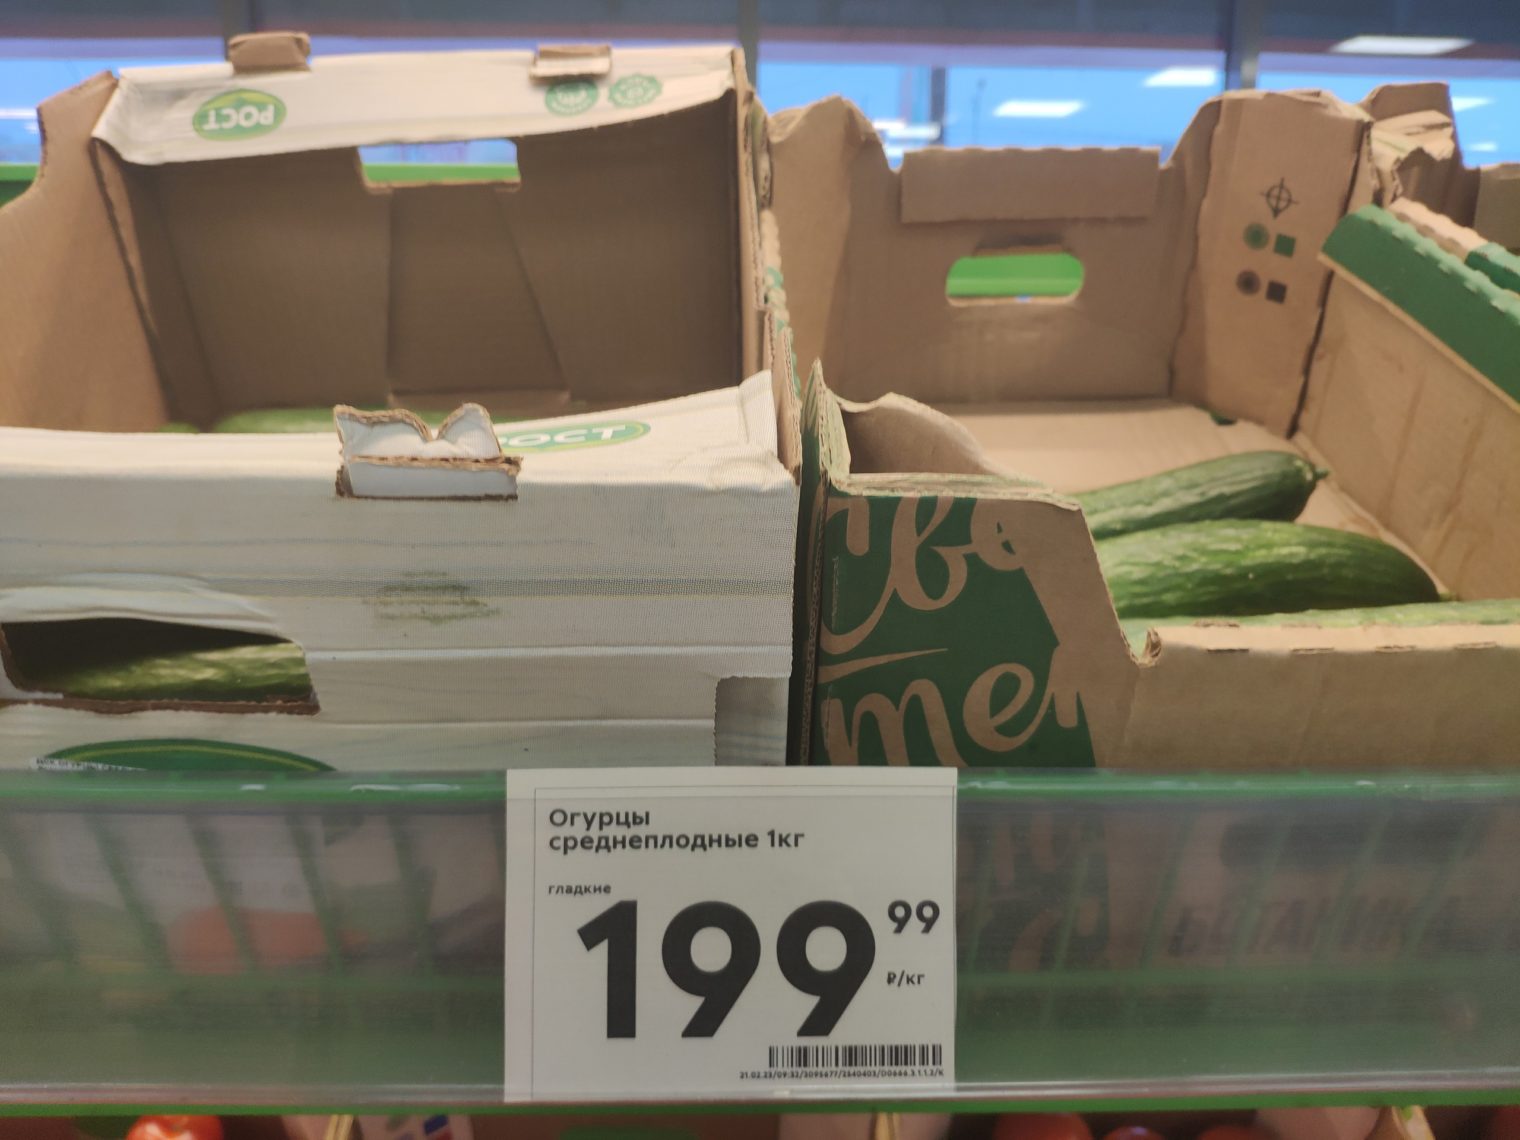 Цены на огурцы и гречку внезапно изменились в магазинах Магнитогорска. А лук по стоимости сравнялся с бананами